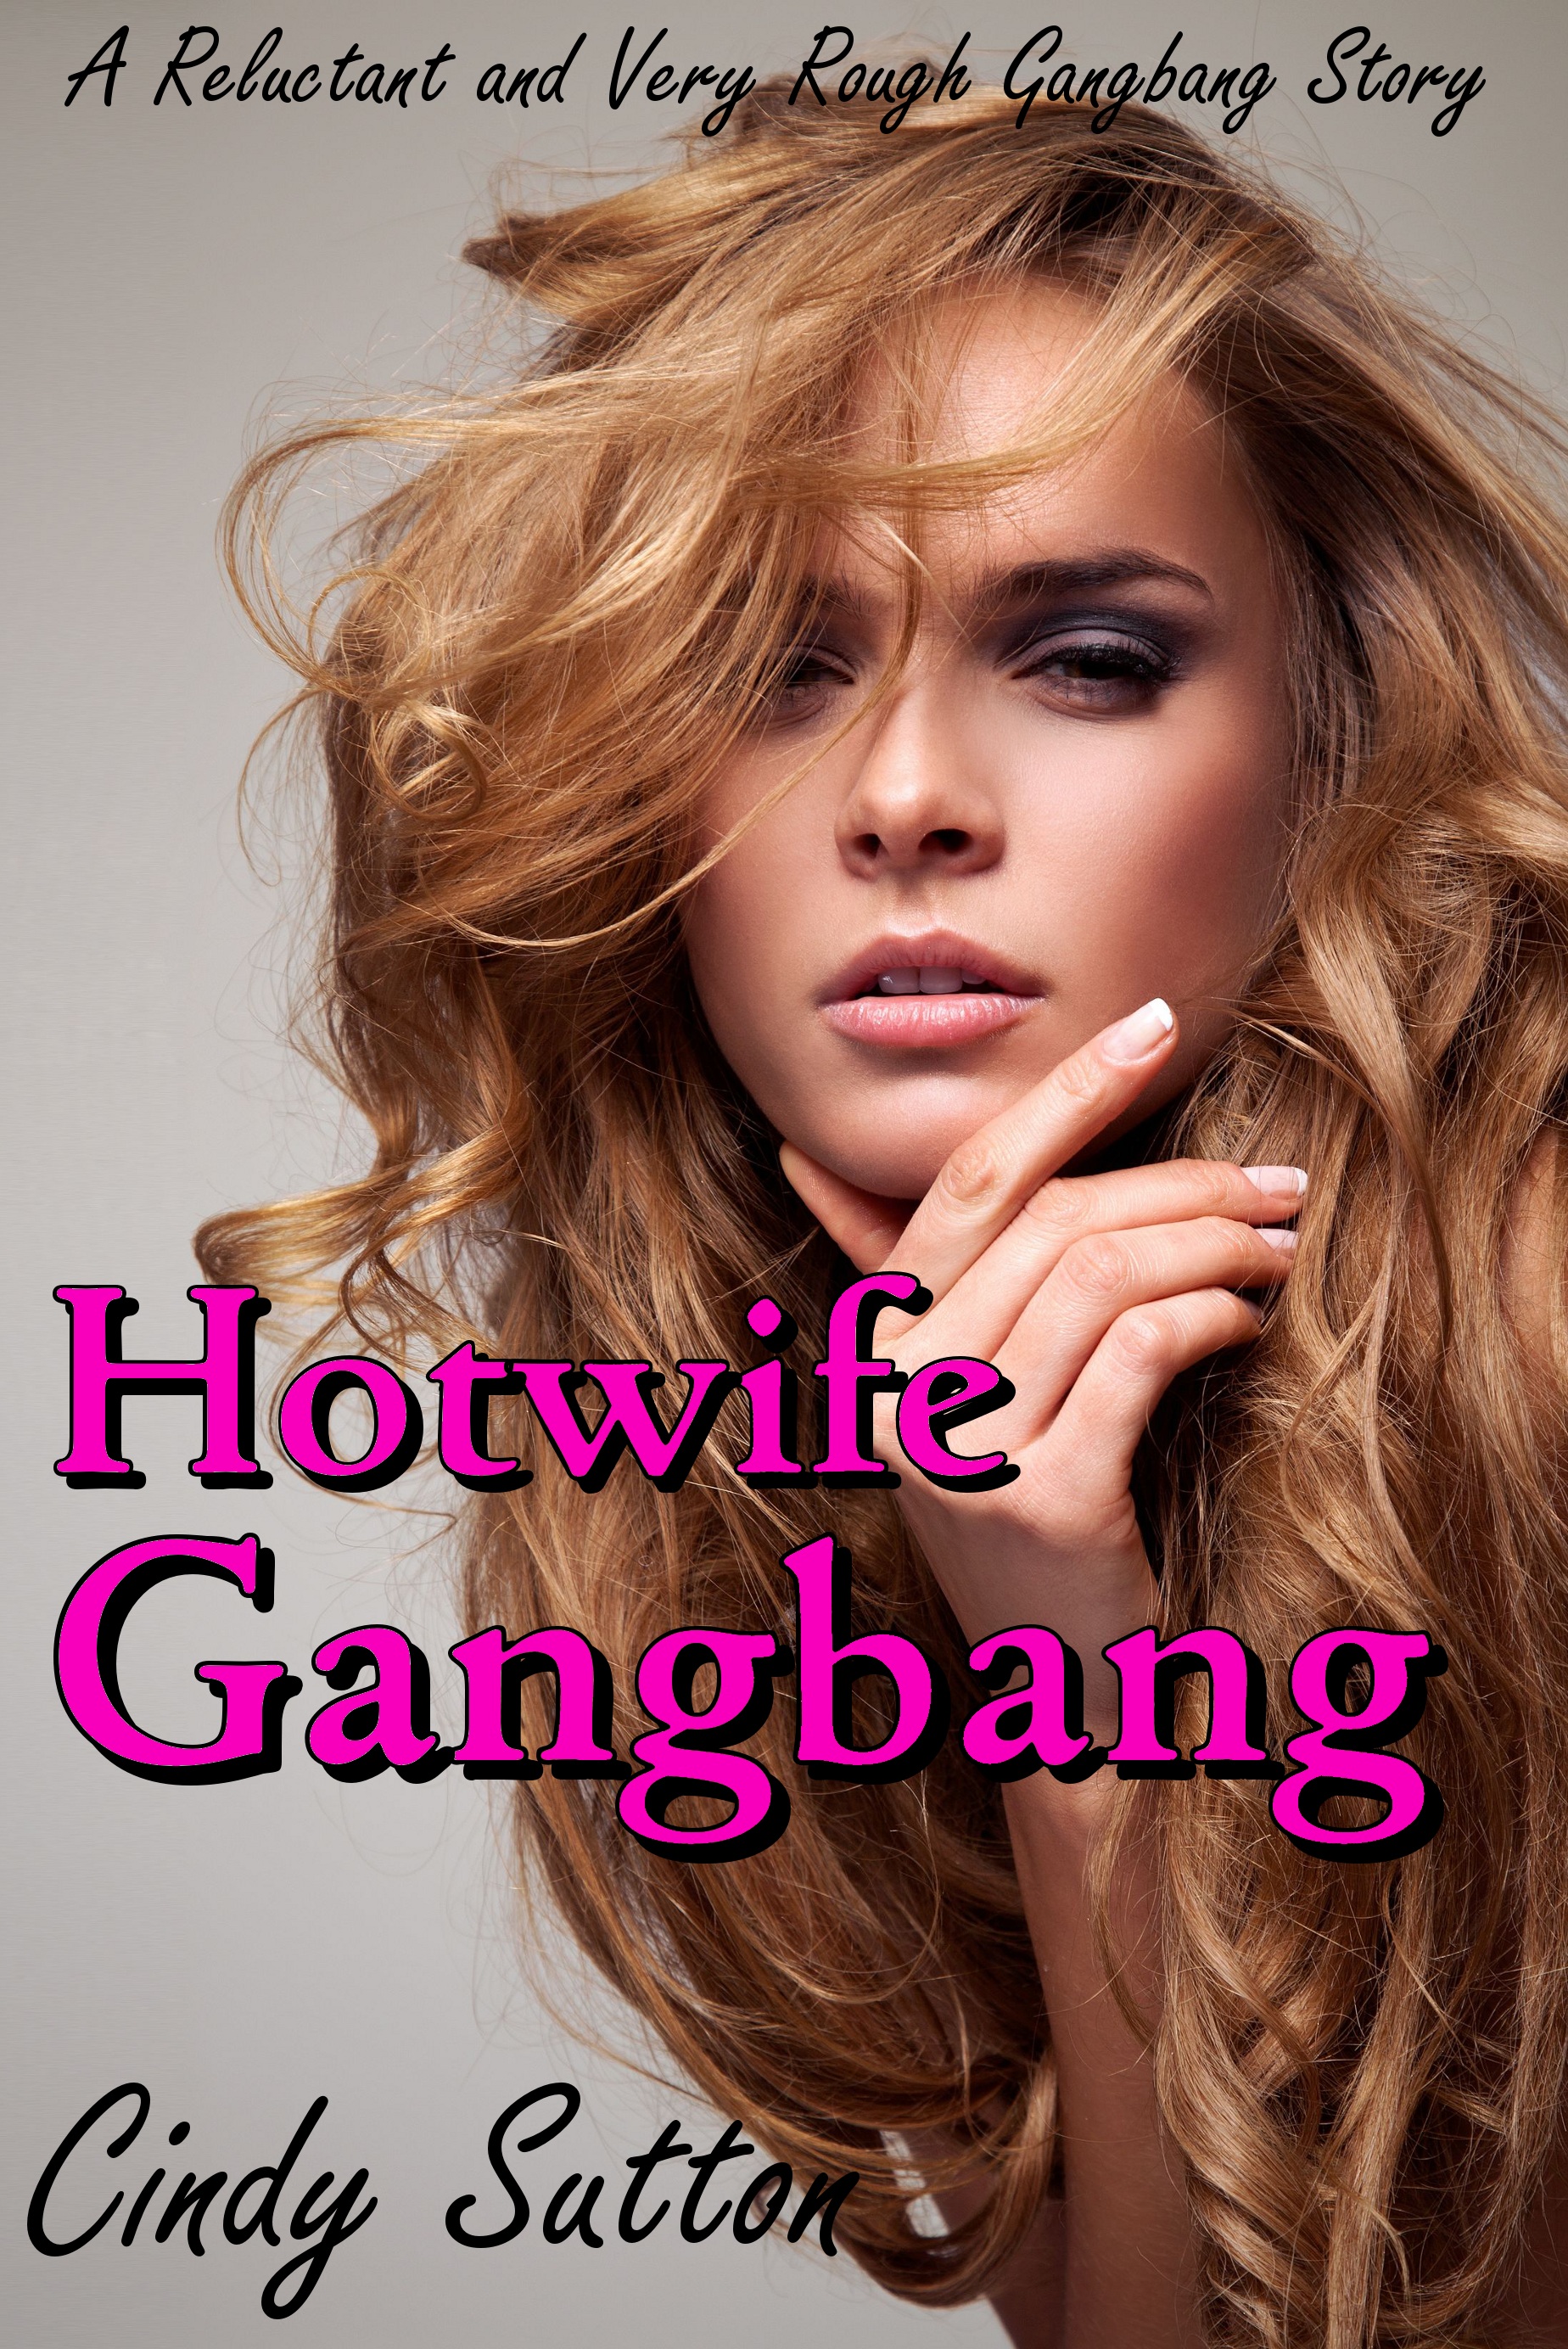 Hot Wife Gangbang Stories Telegraph